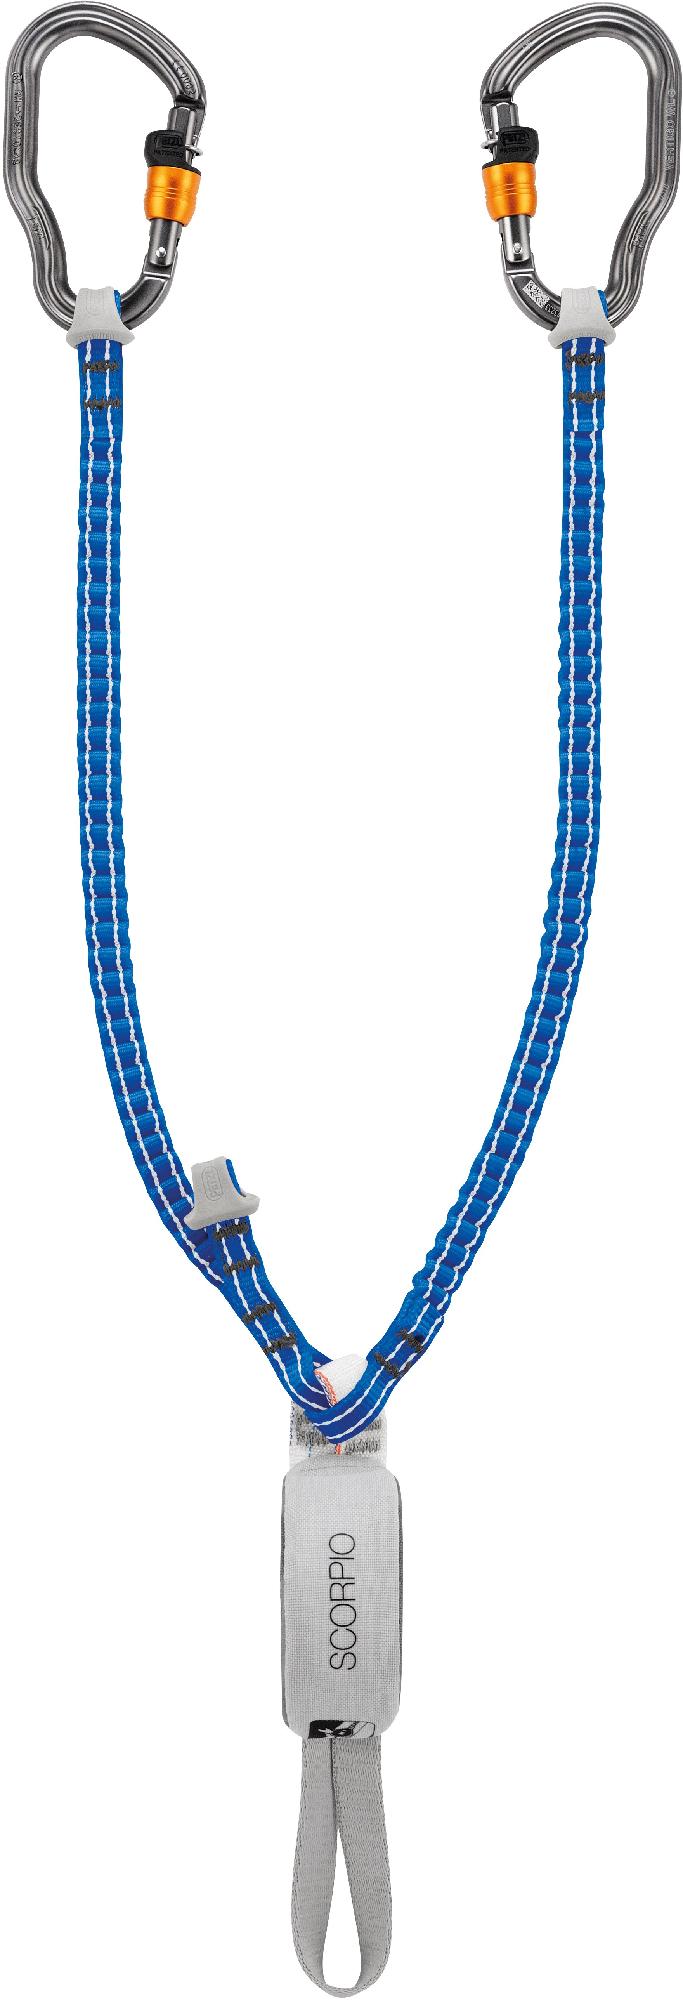 Ремешок для головокружения Скорпиона Petzl, синий базовый многоцелевой компактный подъемник petzl серый